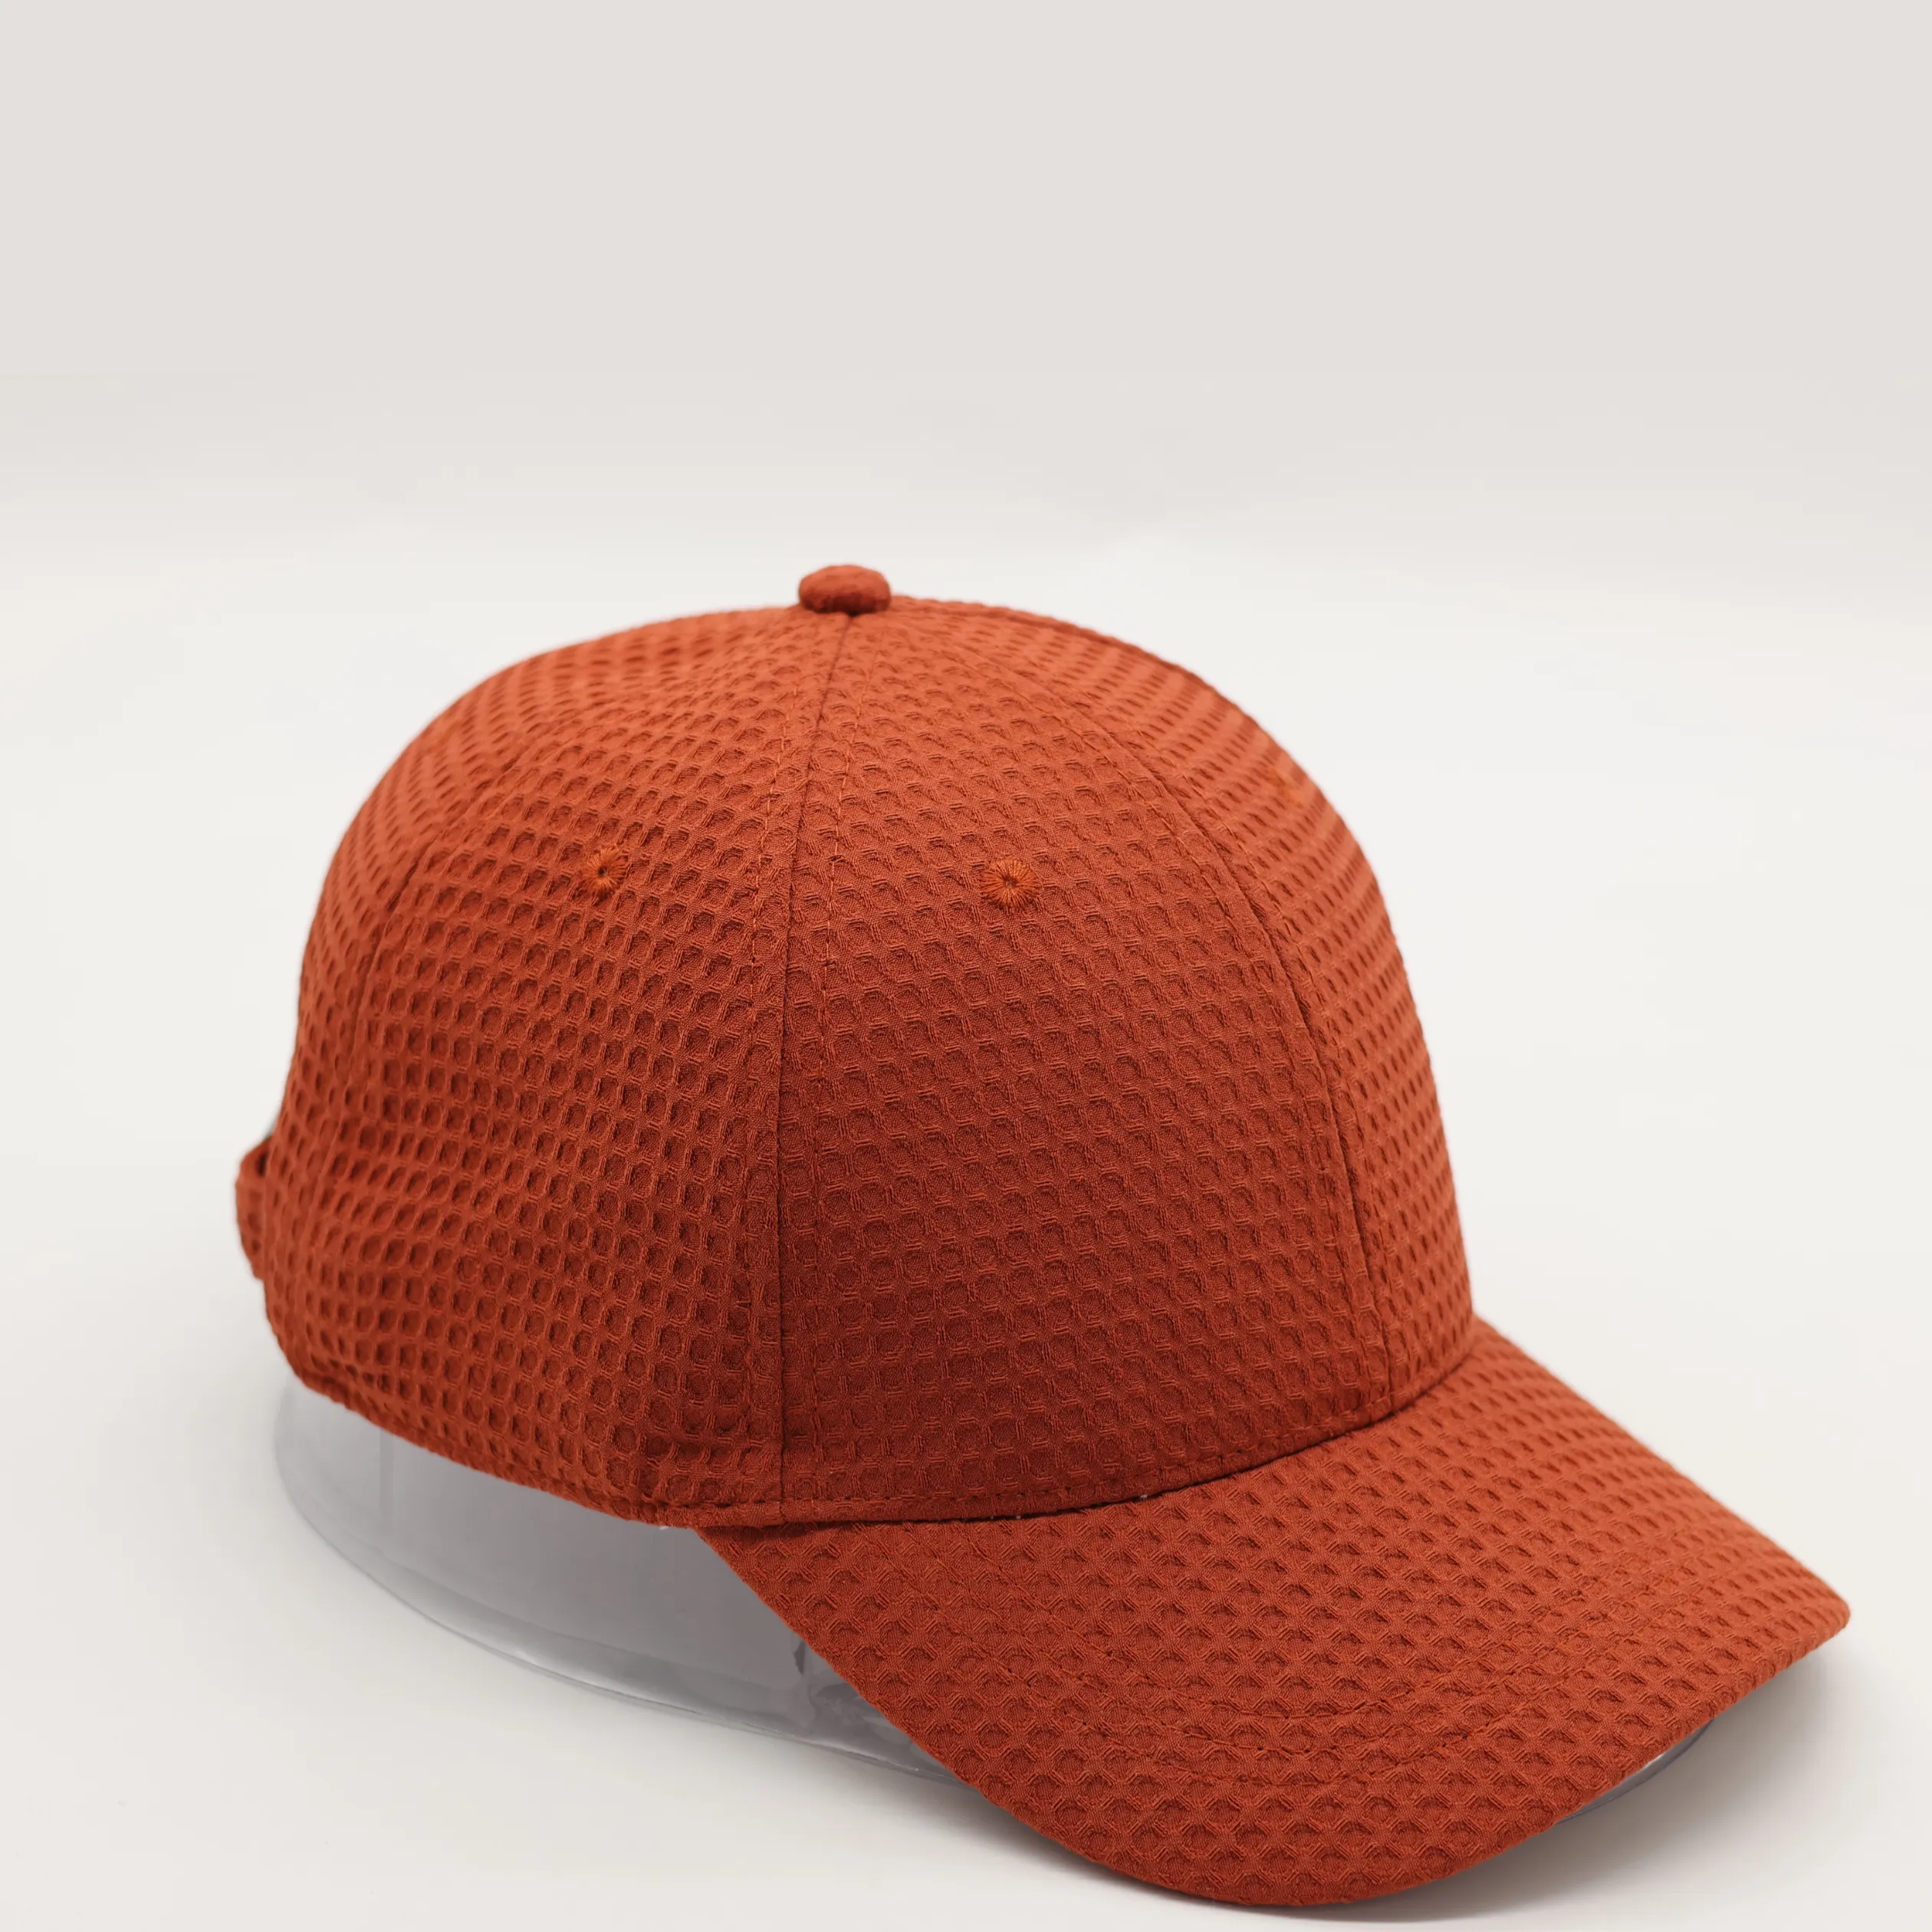 OEM özelleştirilmiş yapılmış baba şapkası özel 3D nakış logosu Golf erkek kap 6 Panel Unisex spor rahat kap özel beyzbol şapkası